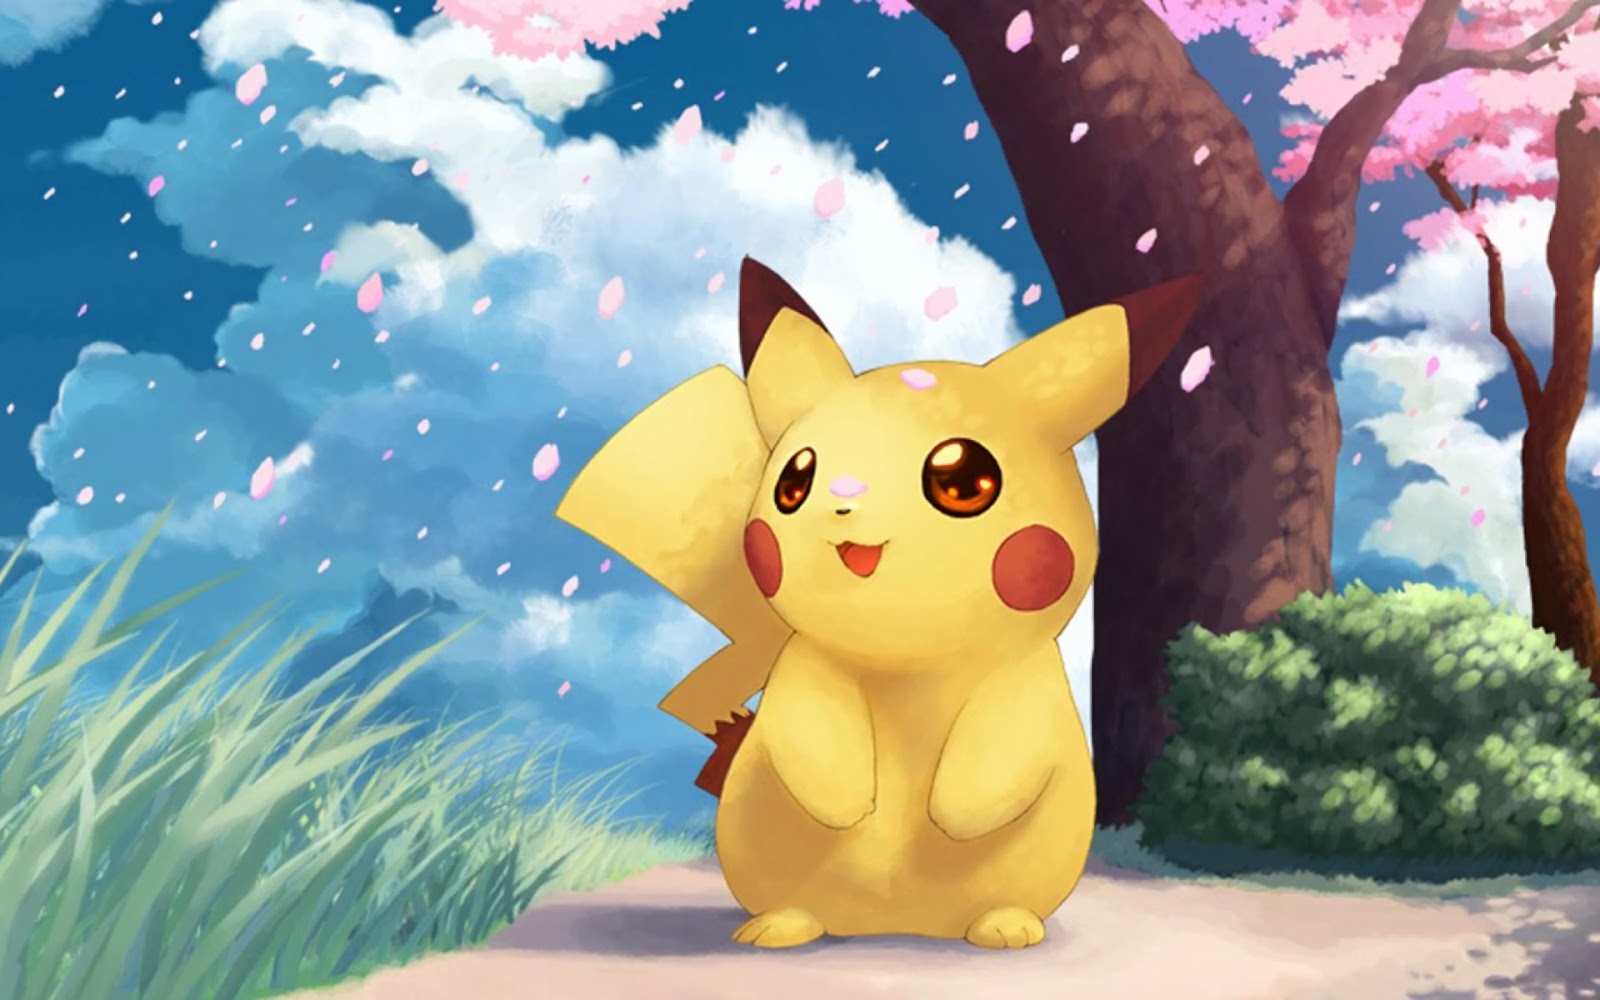 Pikachu cute là khoảnh khắc tuyệt vời để thư giãn và đắm mình trong thế giới hoạt hình. Bạn sẽ không thể cưỡng lại được sự dễ thương và đáng yêu của hình ảnh Pikachu này. Hãy cùng thưởng thức nhé!